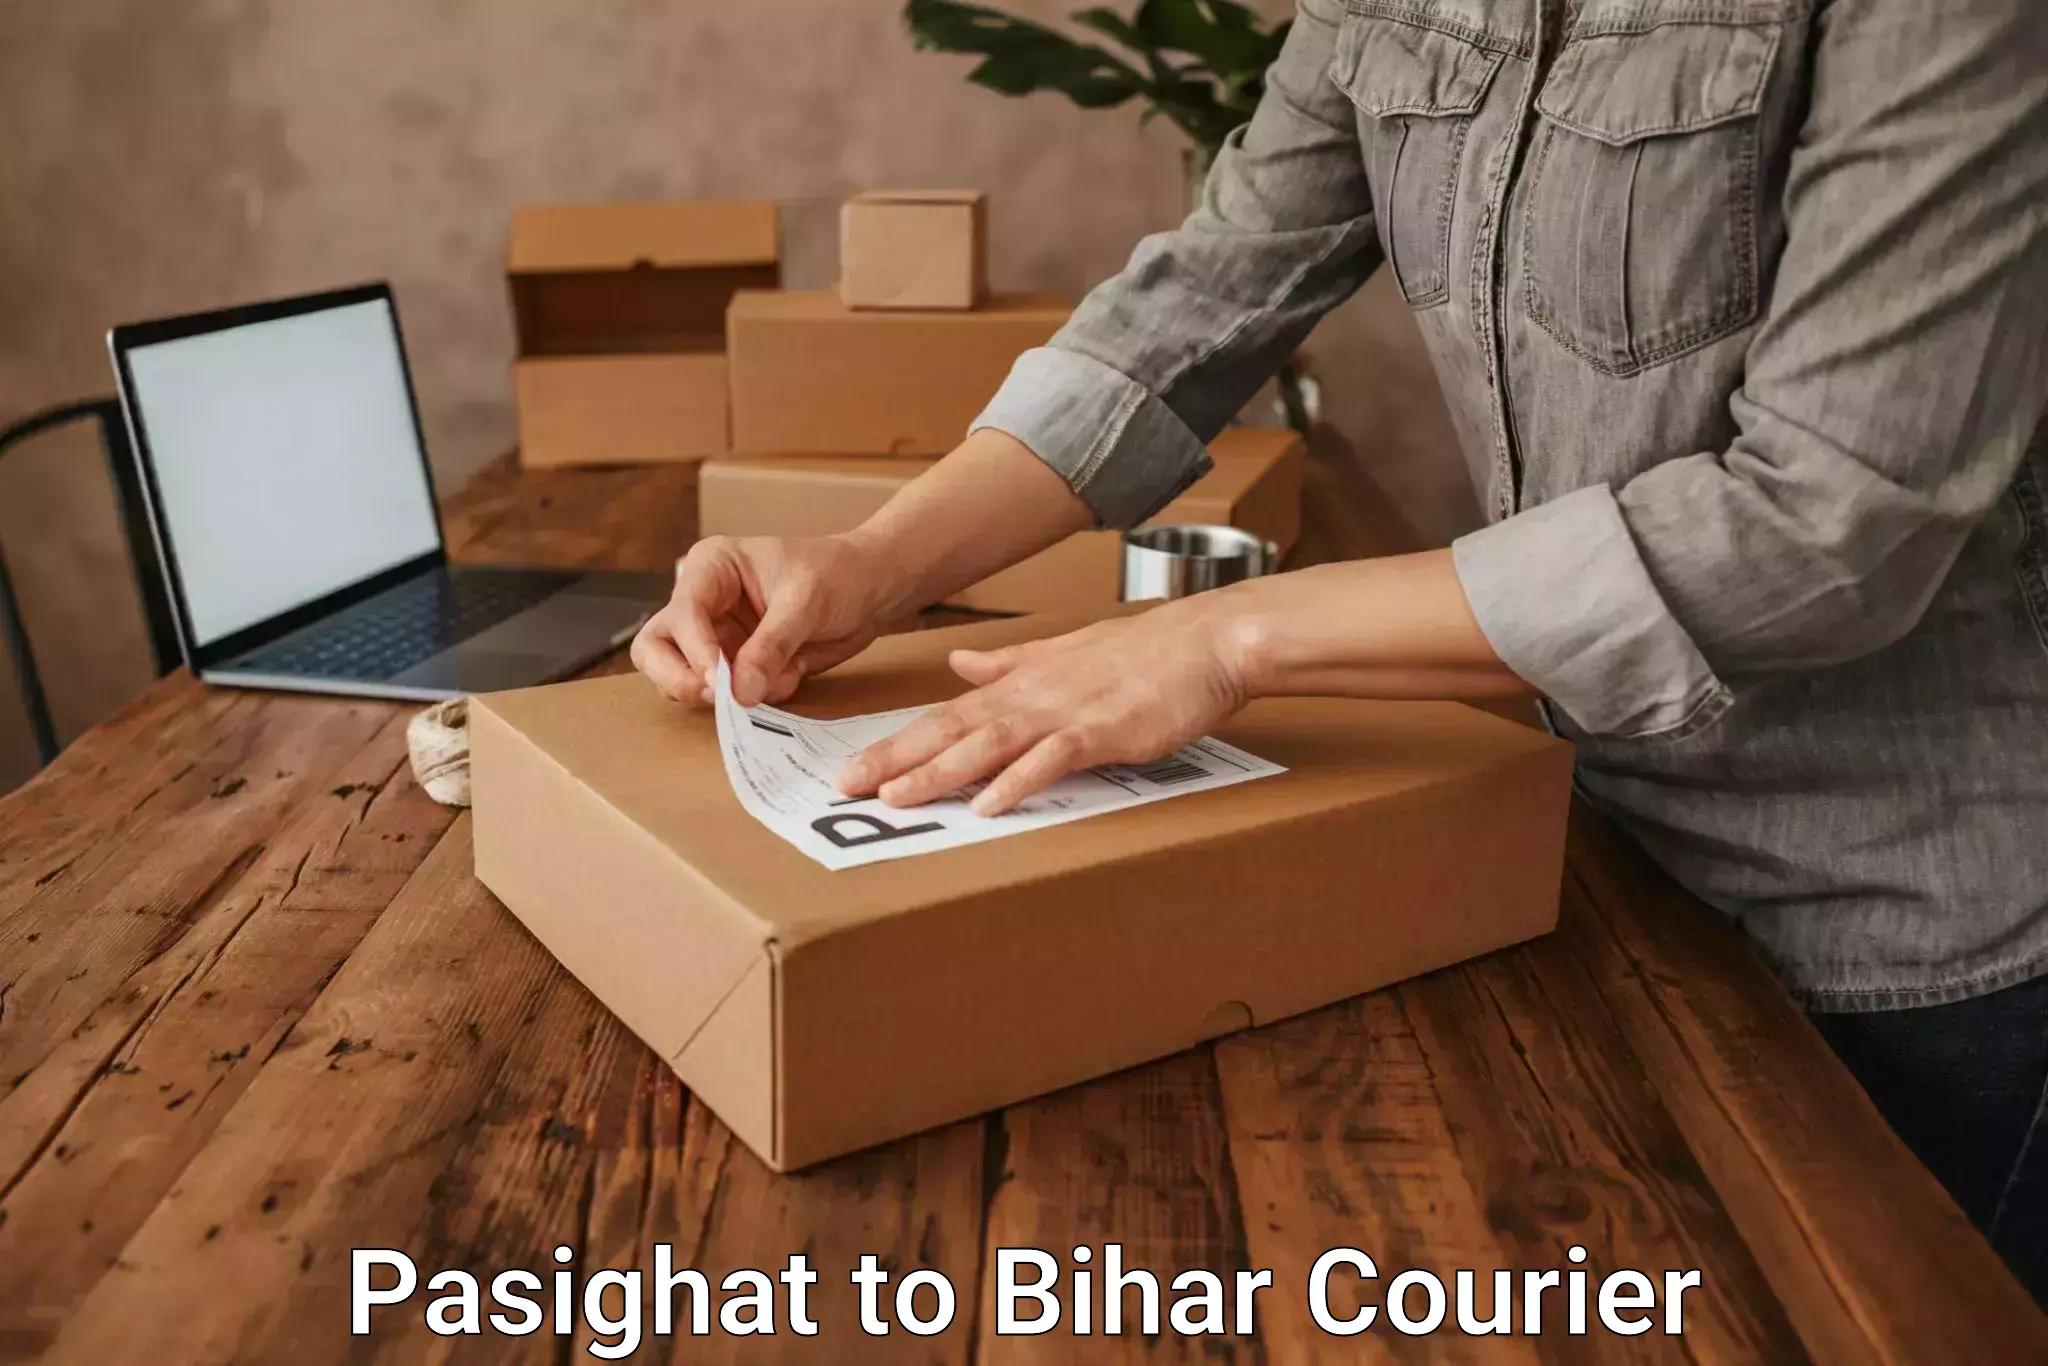 Express mail service Pasighat to Bihar